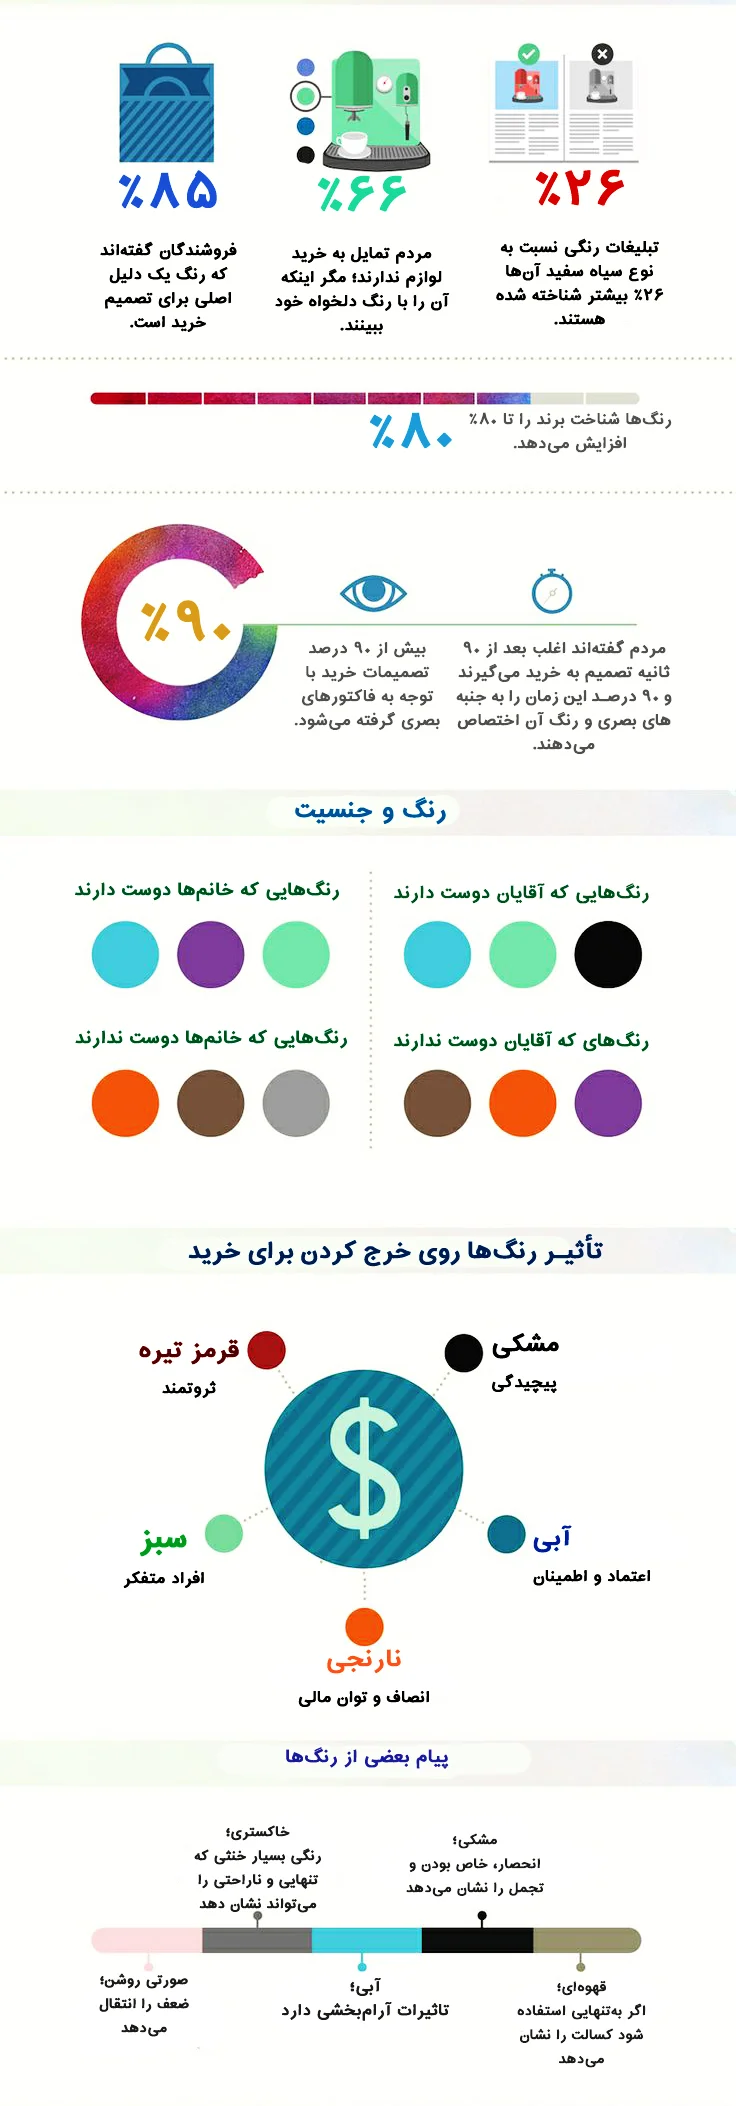 اینفوگرافی روانشناسی رنگها در طراحی سایت